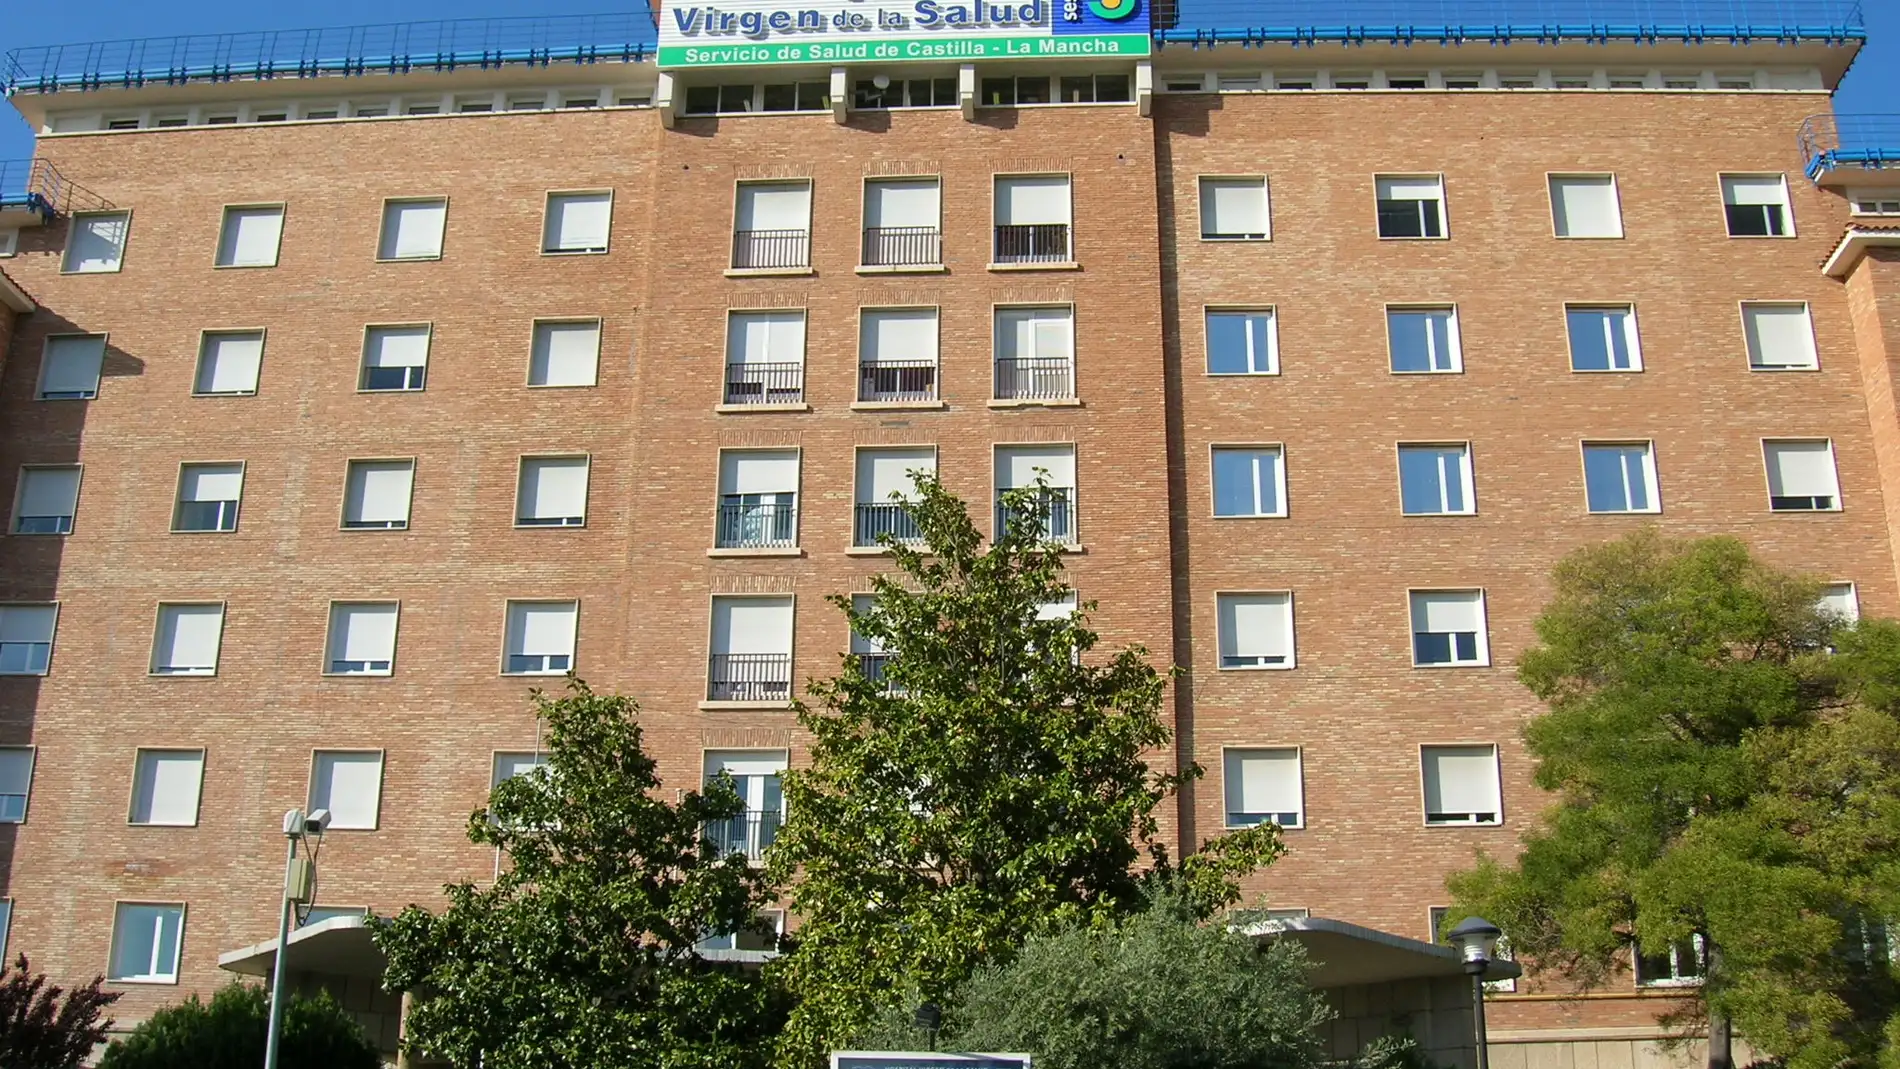 Los trabajadores del Hospital Virgen de la Salud de Toledo vuelven a denunciar la situación de "colapso" de las Urgencias del centro sanitario y piden información sobre el traslado al nuevo Hospital Universitario